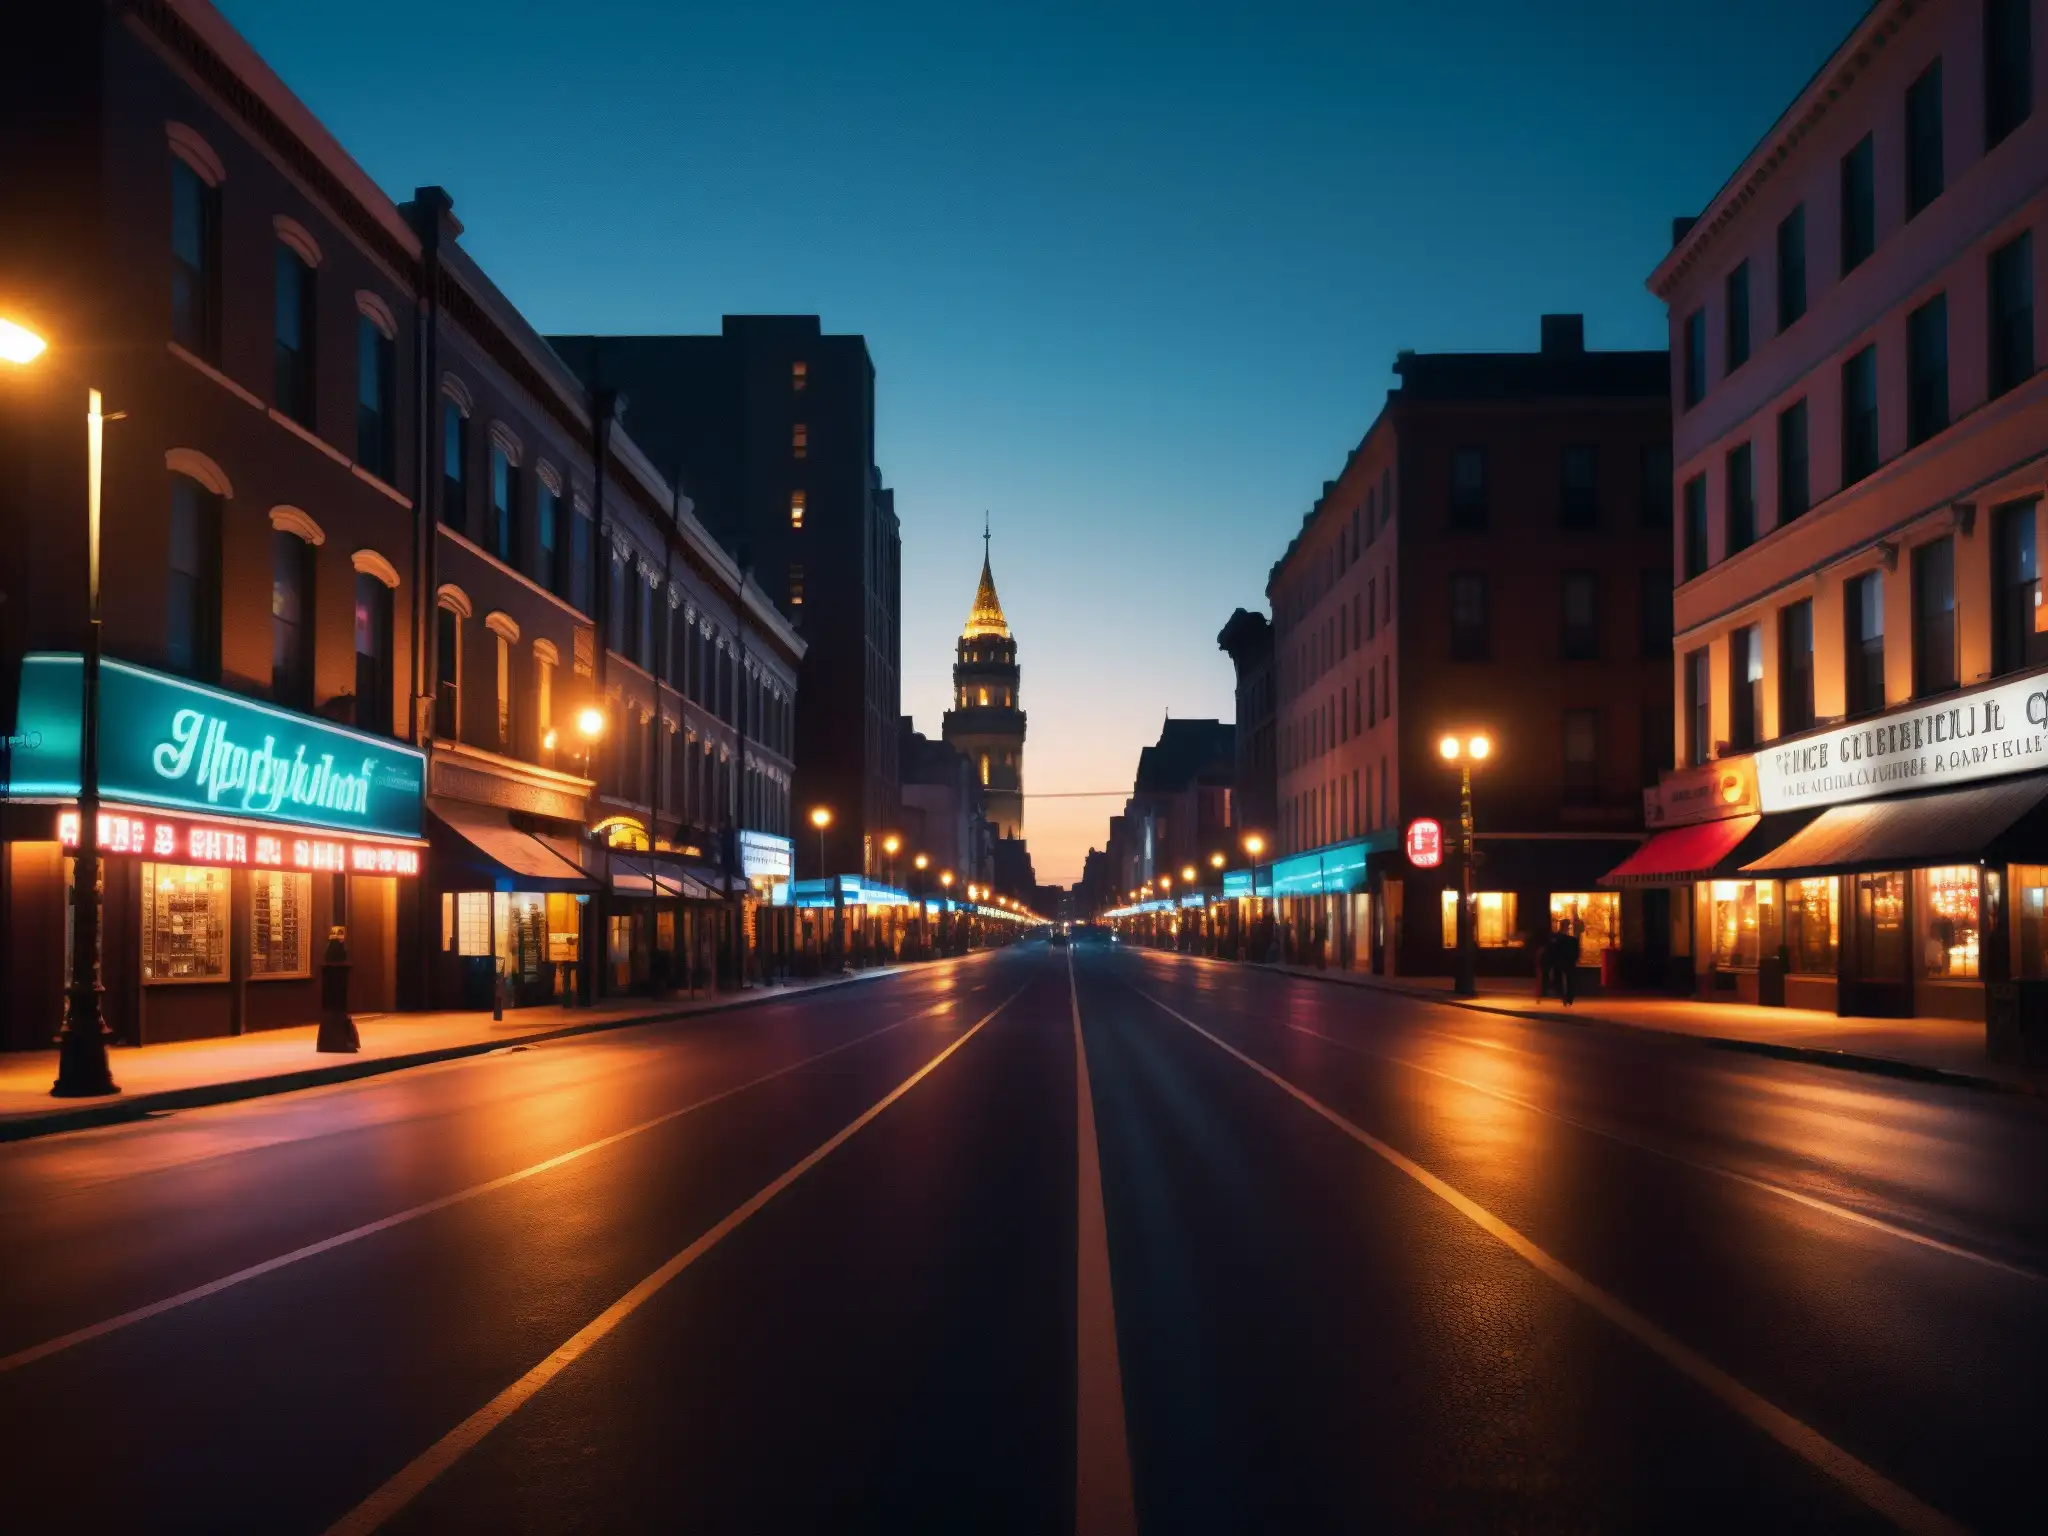 Una misteriosa calle nocturna con luces de neón y sombras, ideal para análisis psicológico leyendas urbanas